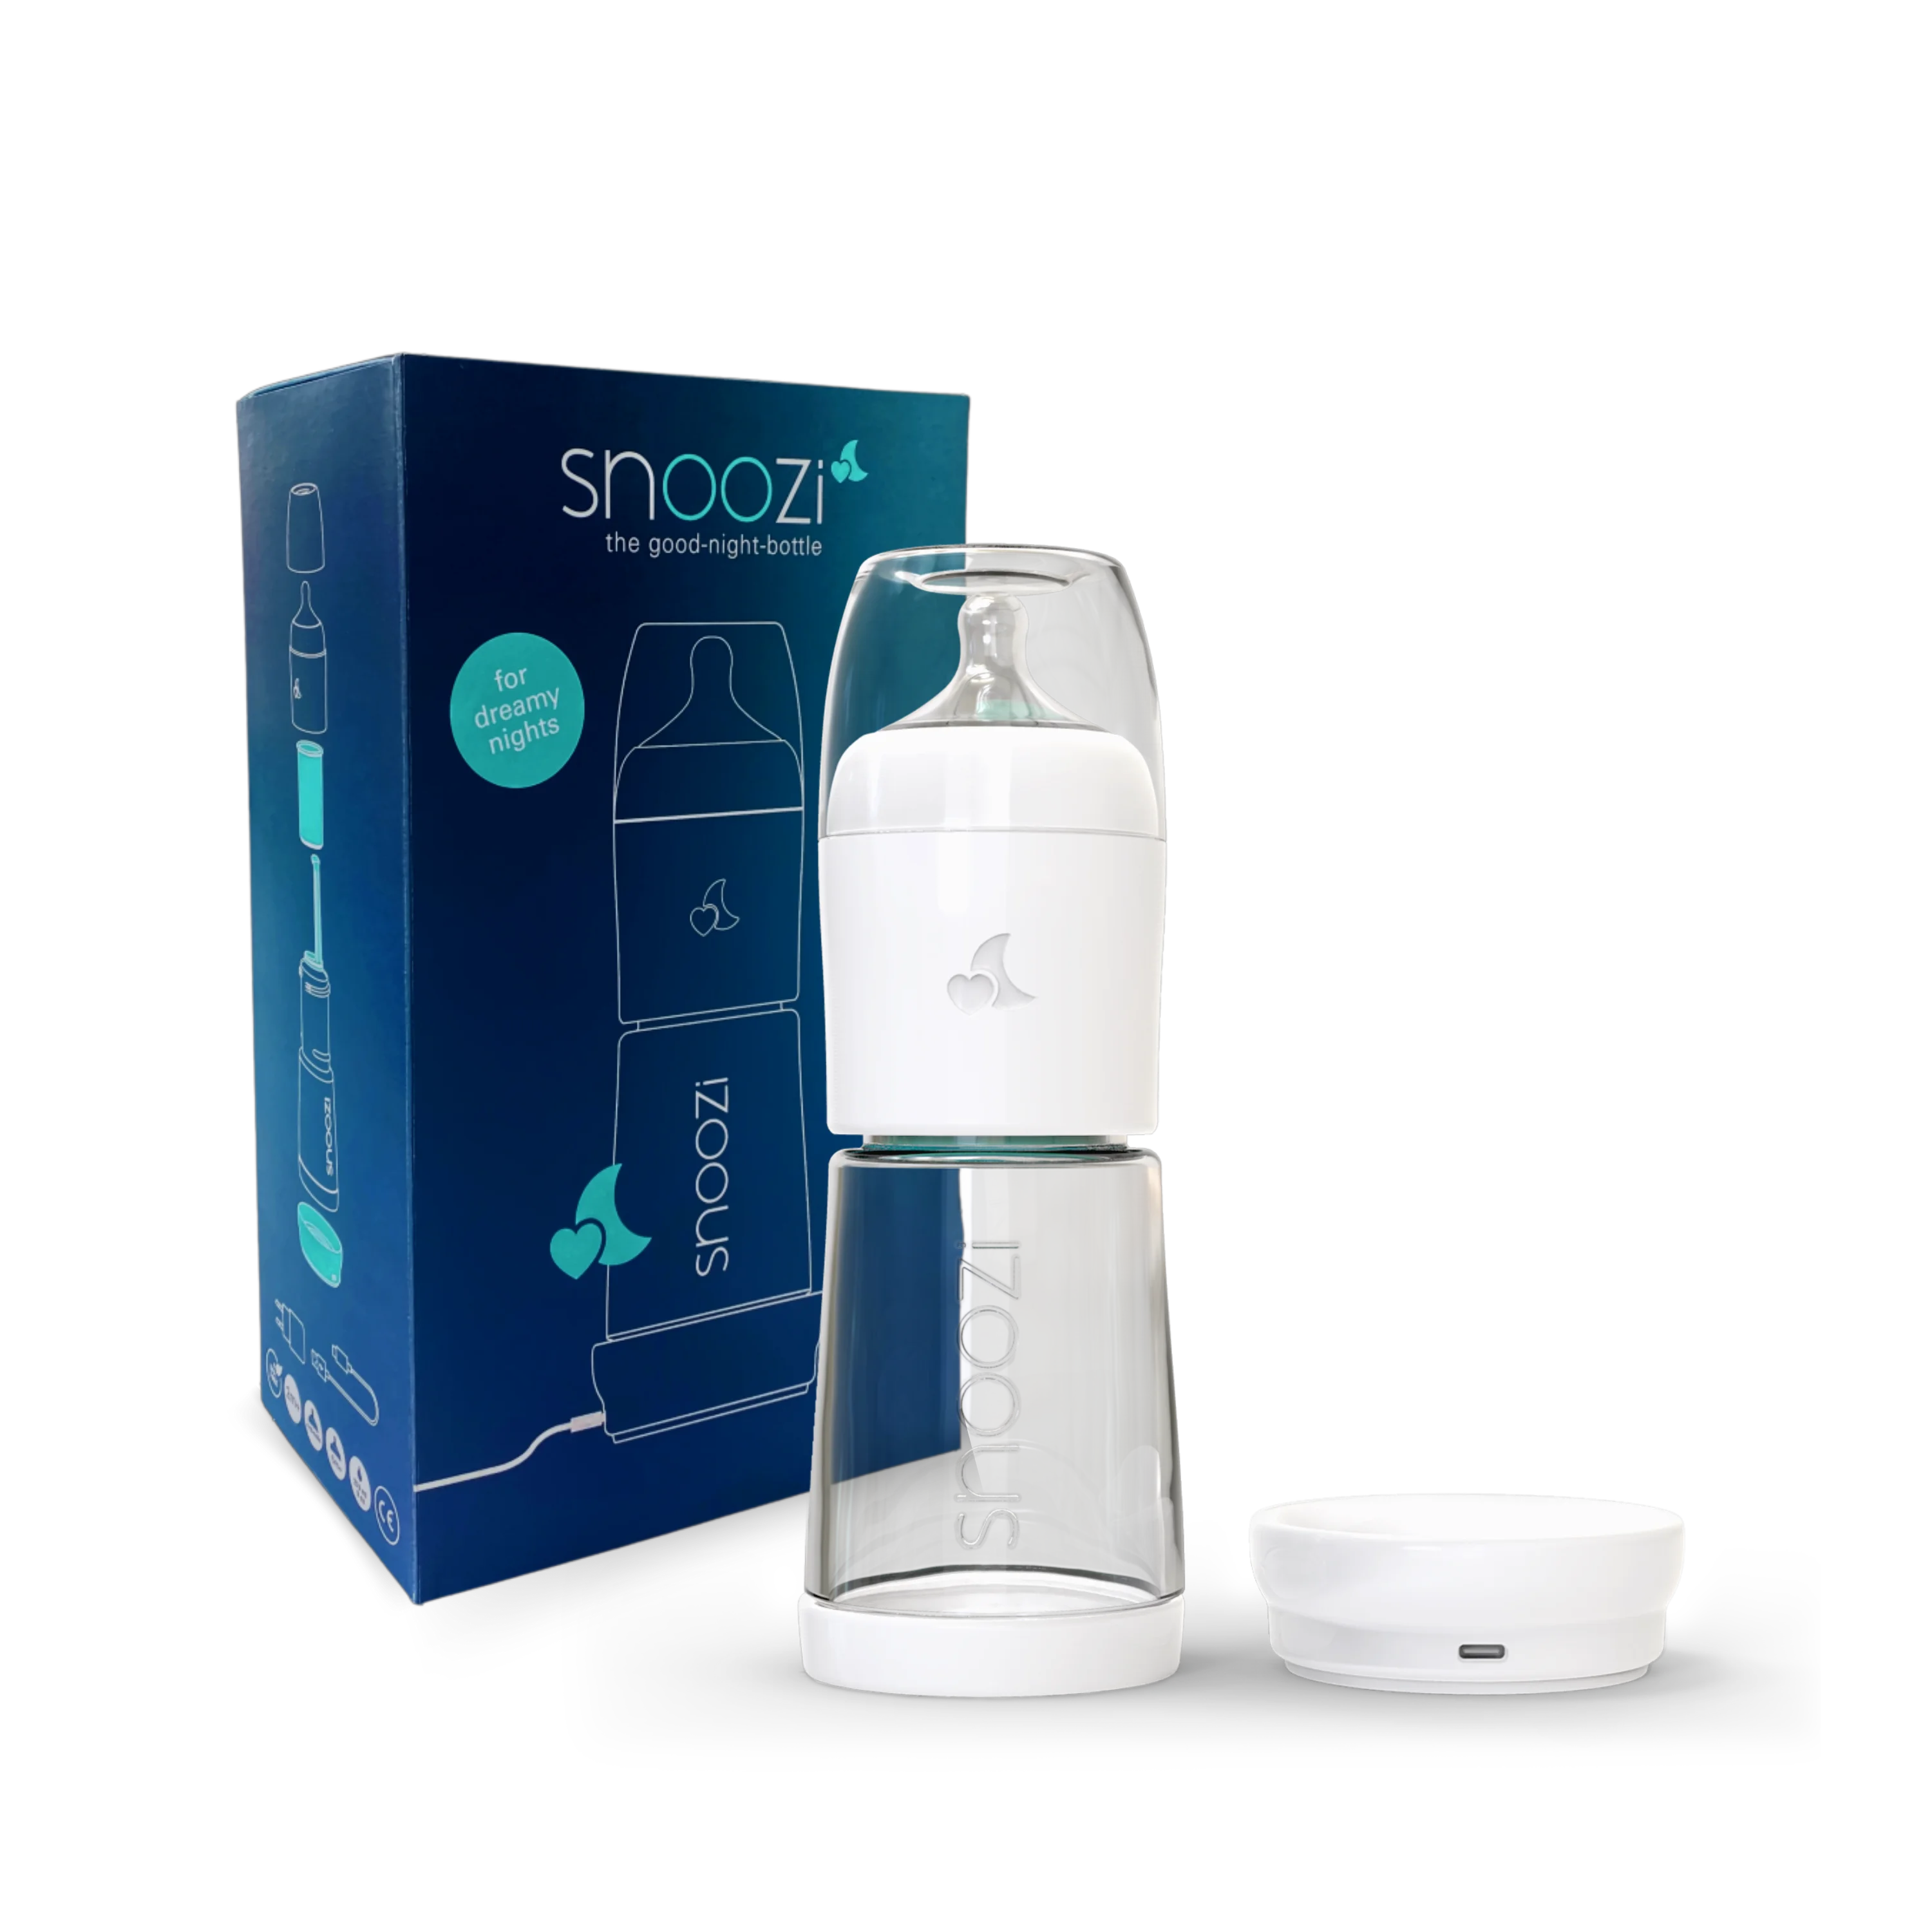 Produktbild der snoozi Nachtflasche mit Verpackung 